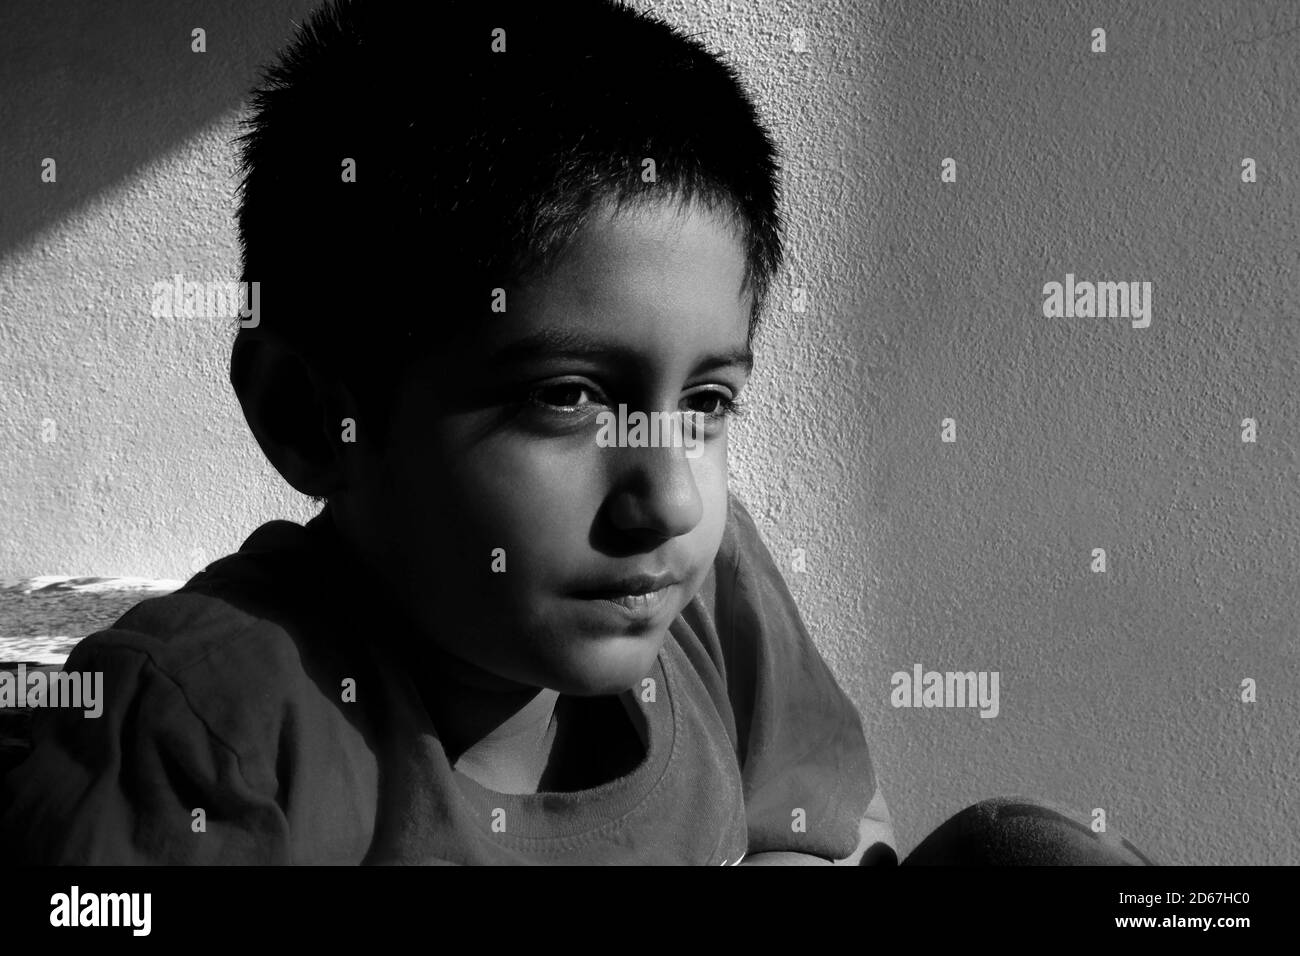 Eine Nahaufnahme eines indischen Jungen, der Schlüssellicht im morgendlichen Schwarz-Weiß-Foto sieht, Kalaburagi, Karnataka/Indien-Oktober 09 2020 Stockfoto